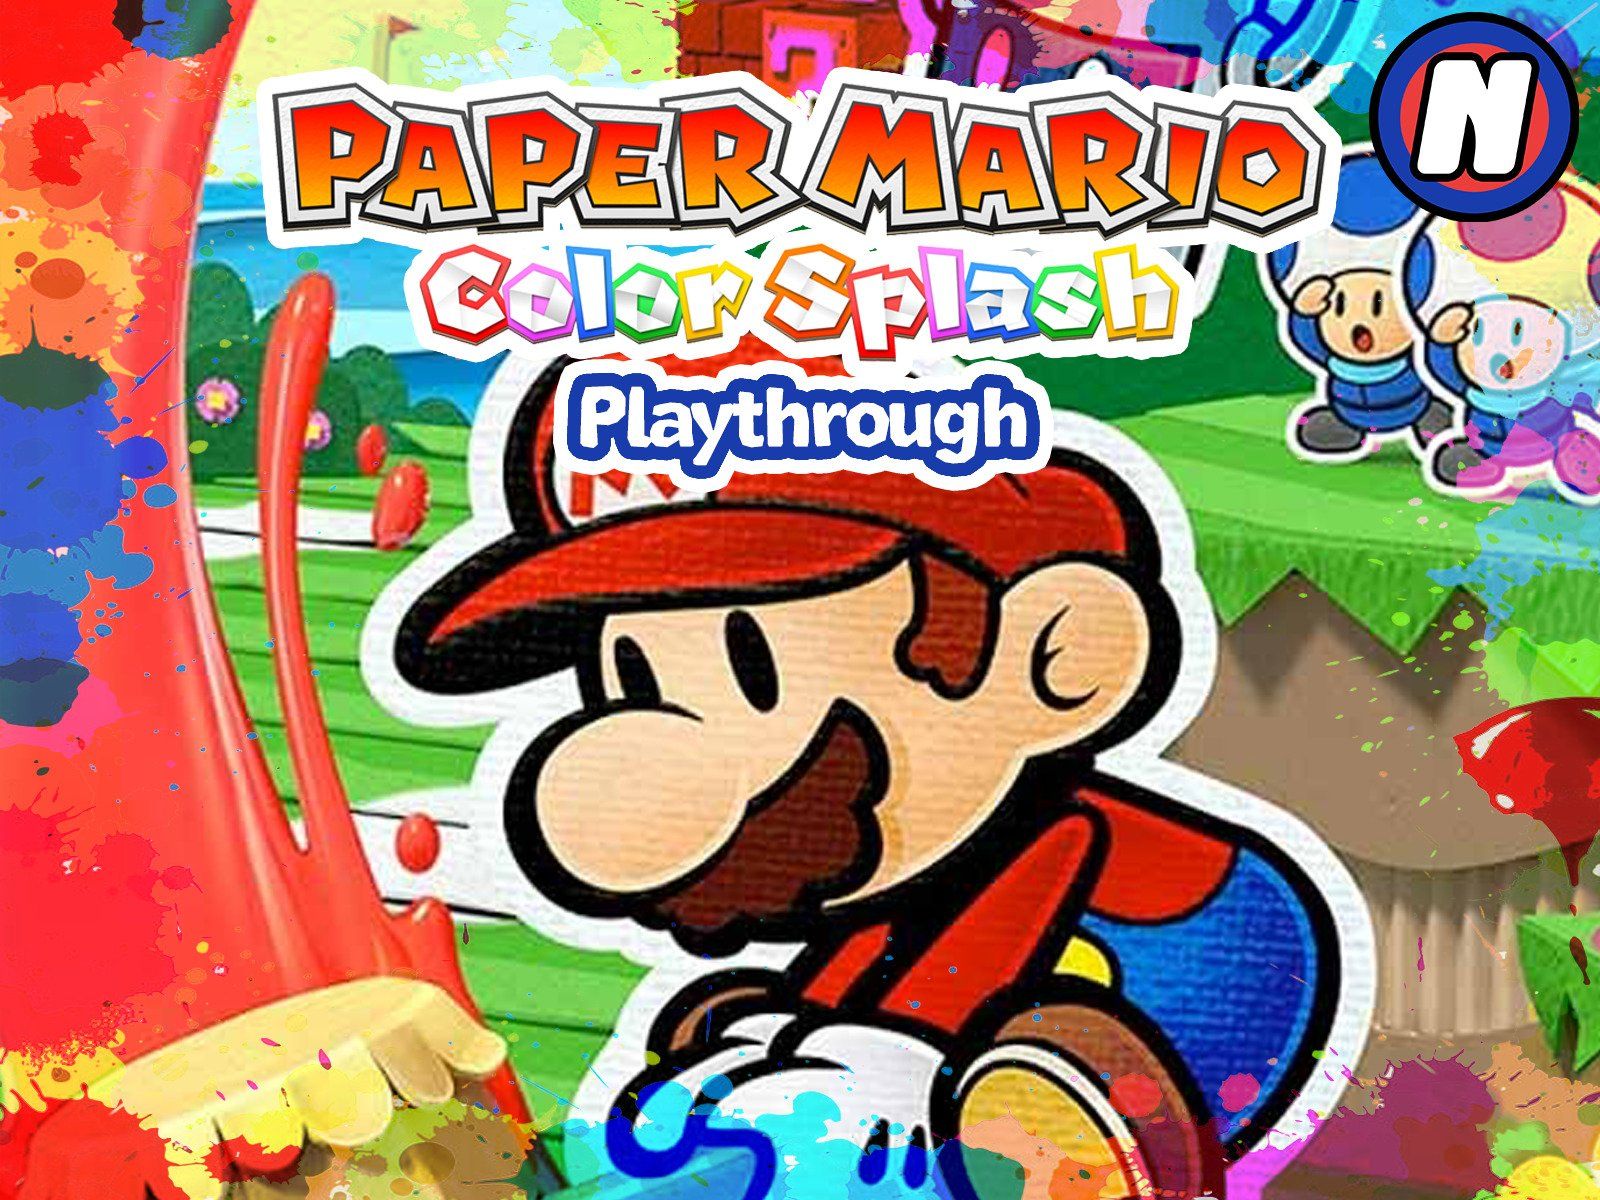 Watch Clip: Paper Mario Color Splash Playthrough